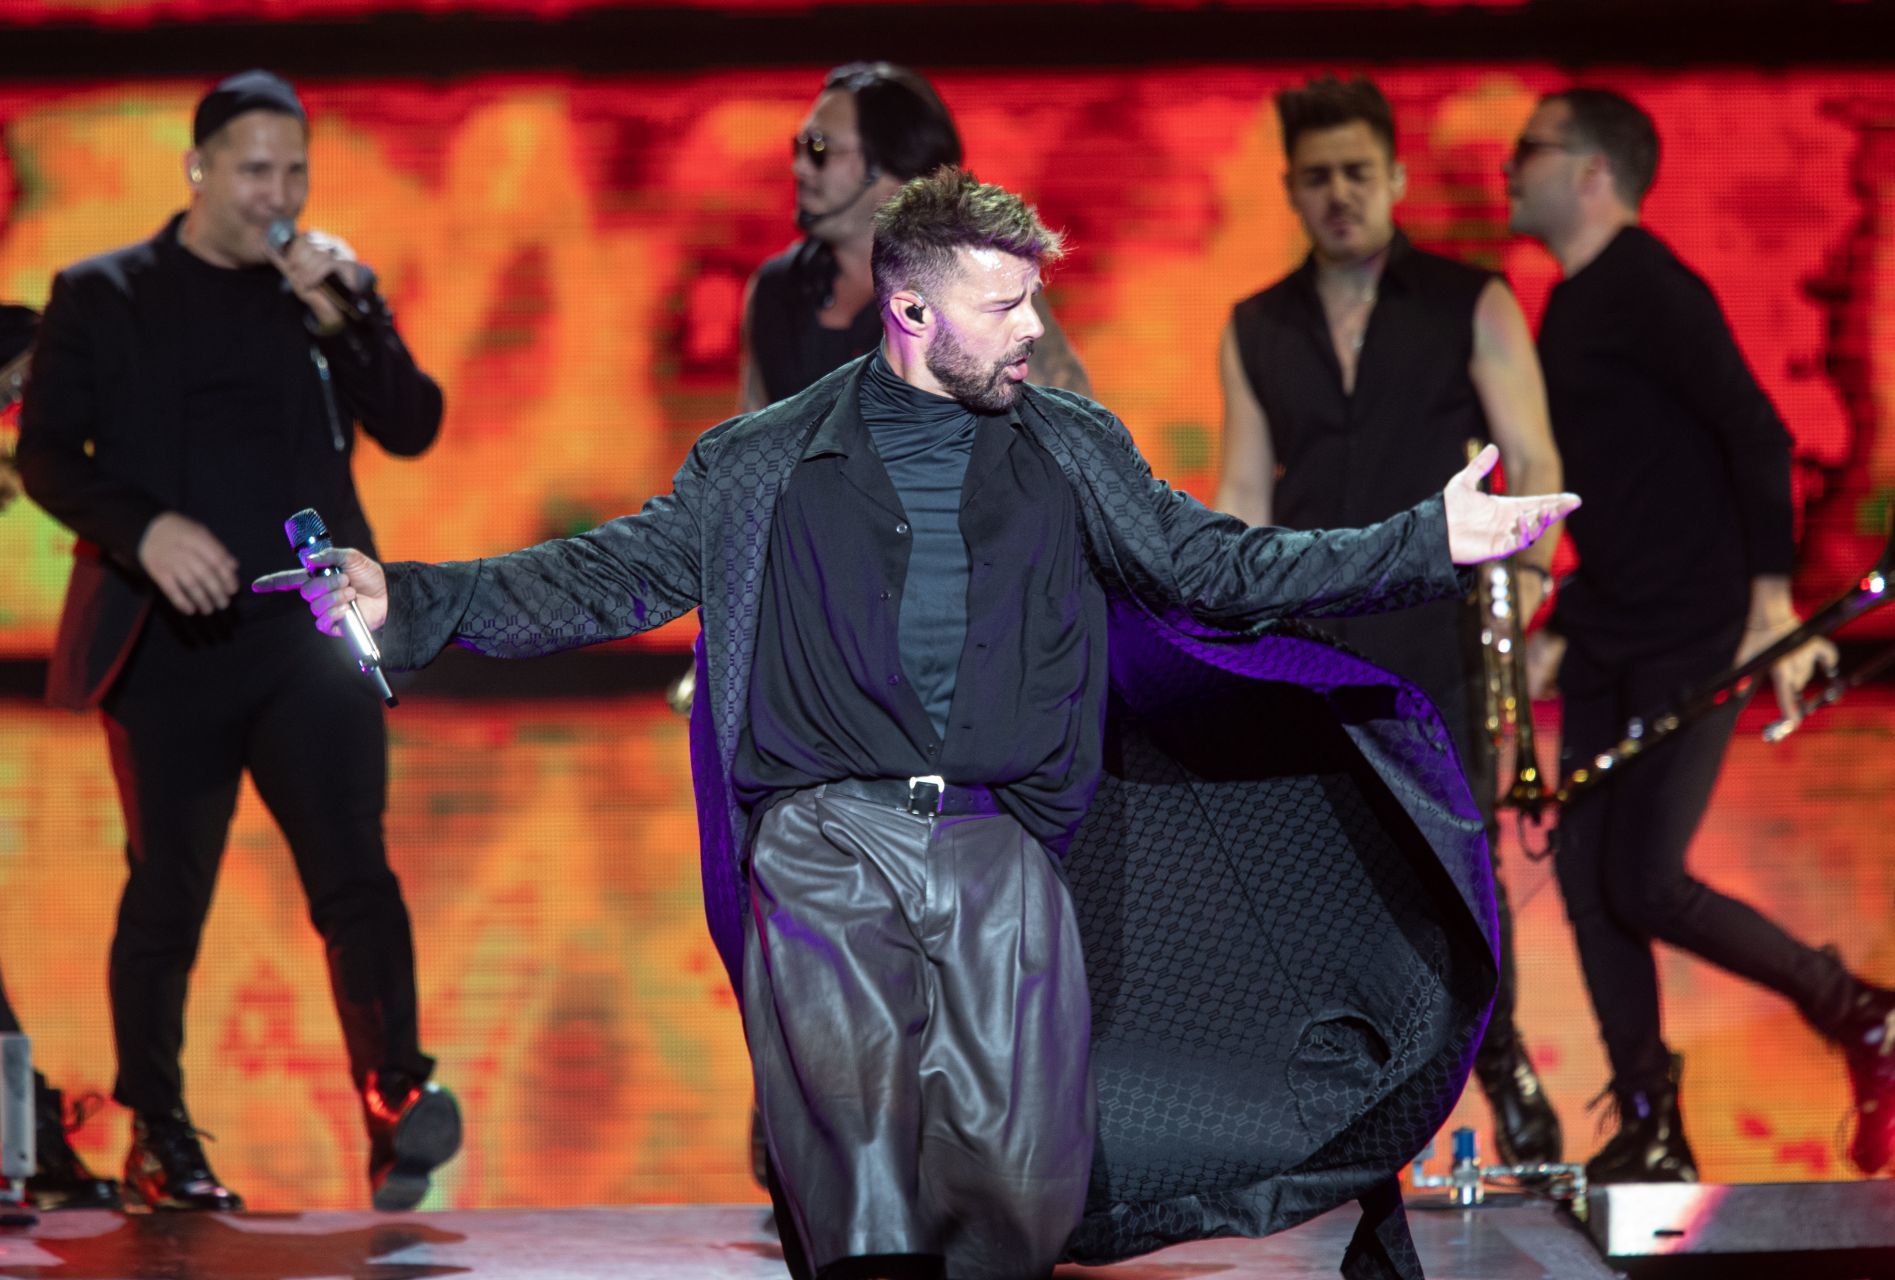 Cancelan a última hora concierto de Ricky Martin en Querétaro; suspenden también el de Zacatecas